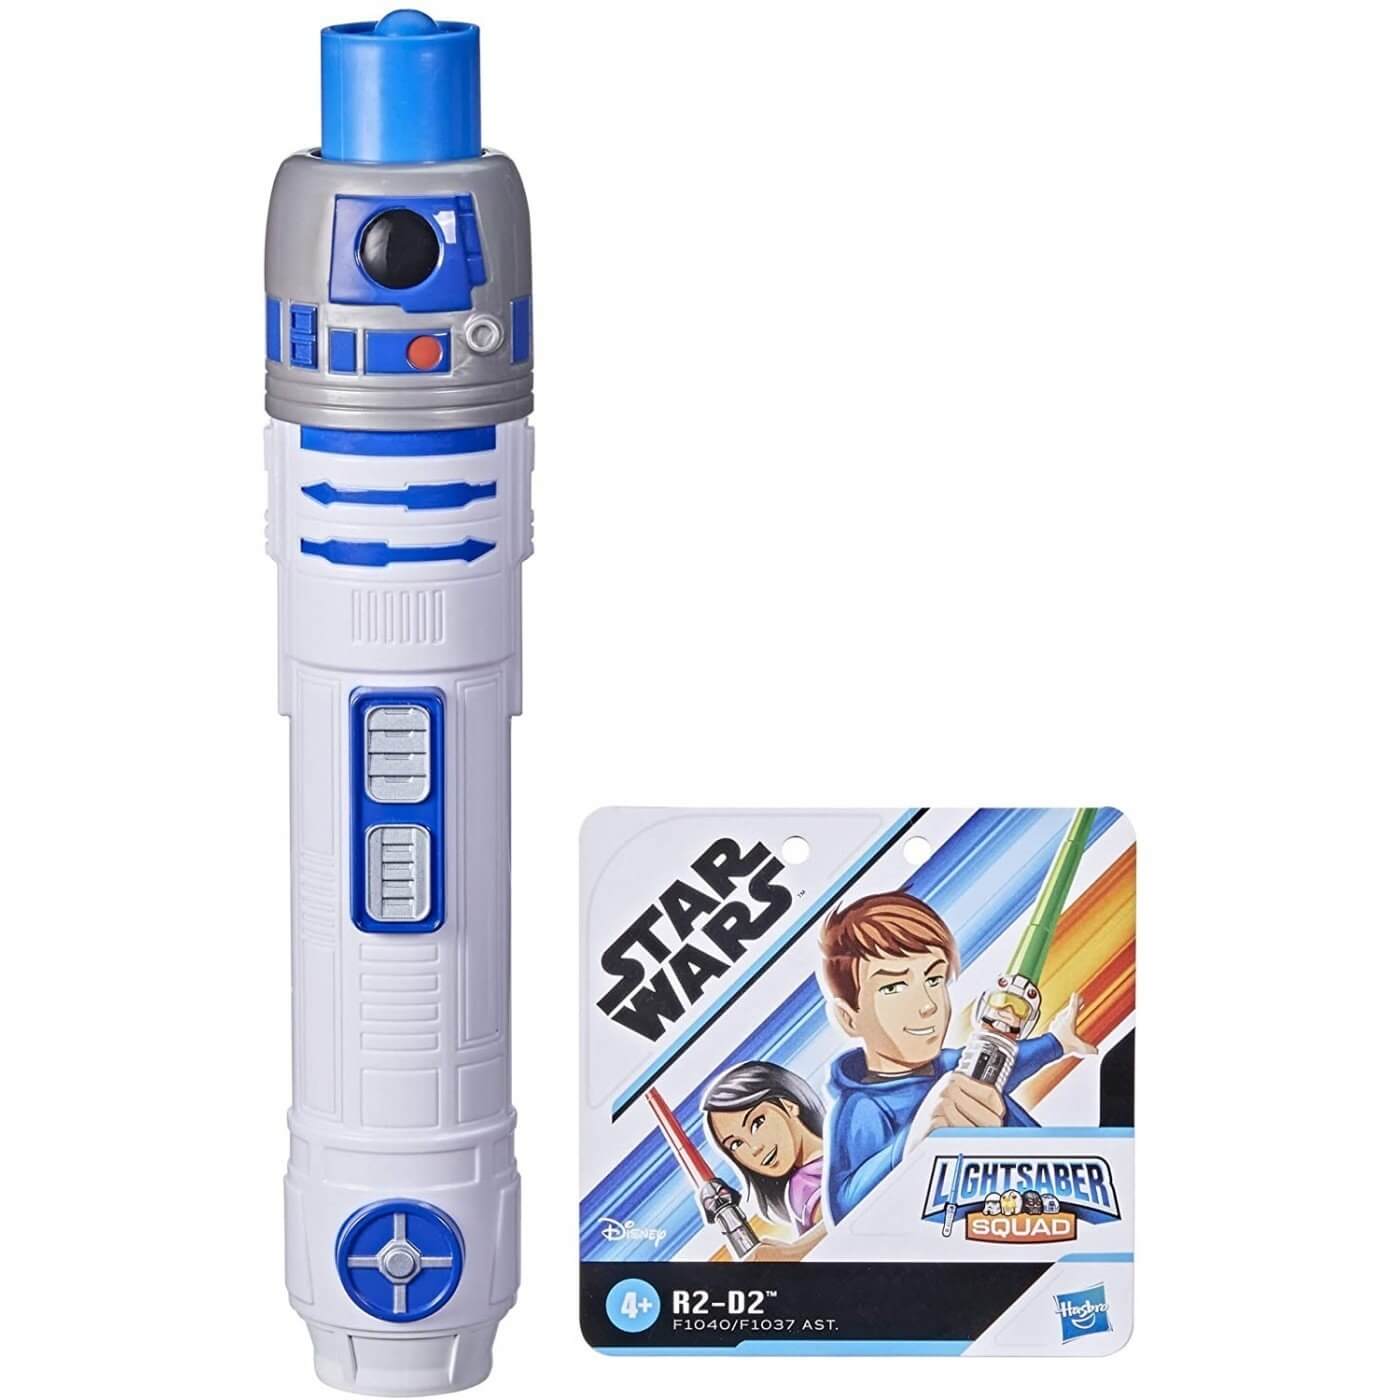 Star Wars Lightsaber Squad R2-D2 Extendable Blue Lightsaber